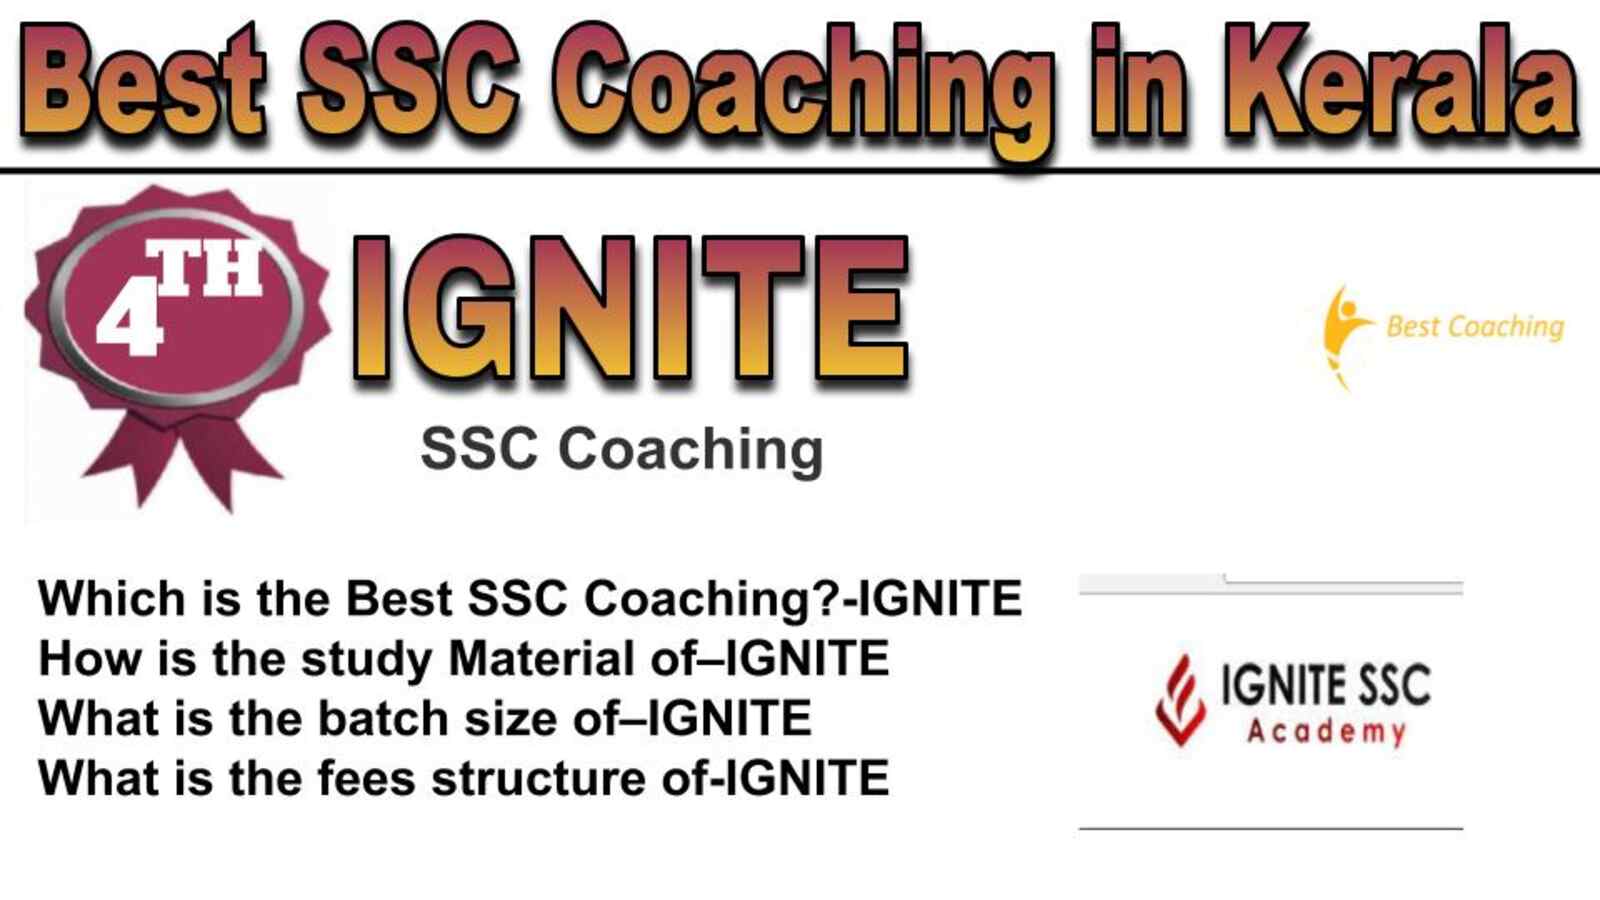 Rank 4 best SSC coaching in Kerala